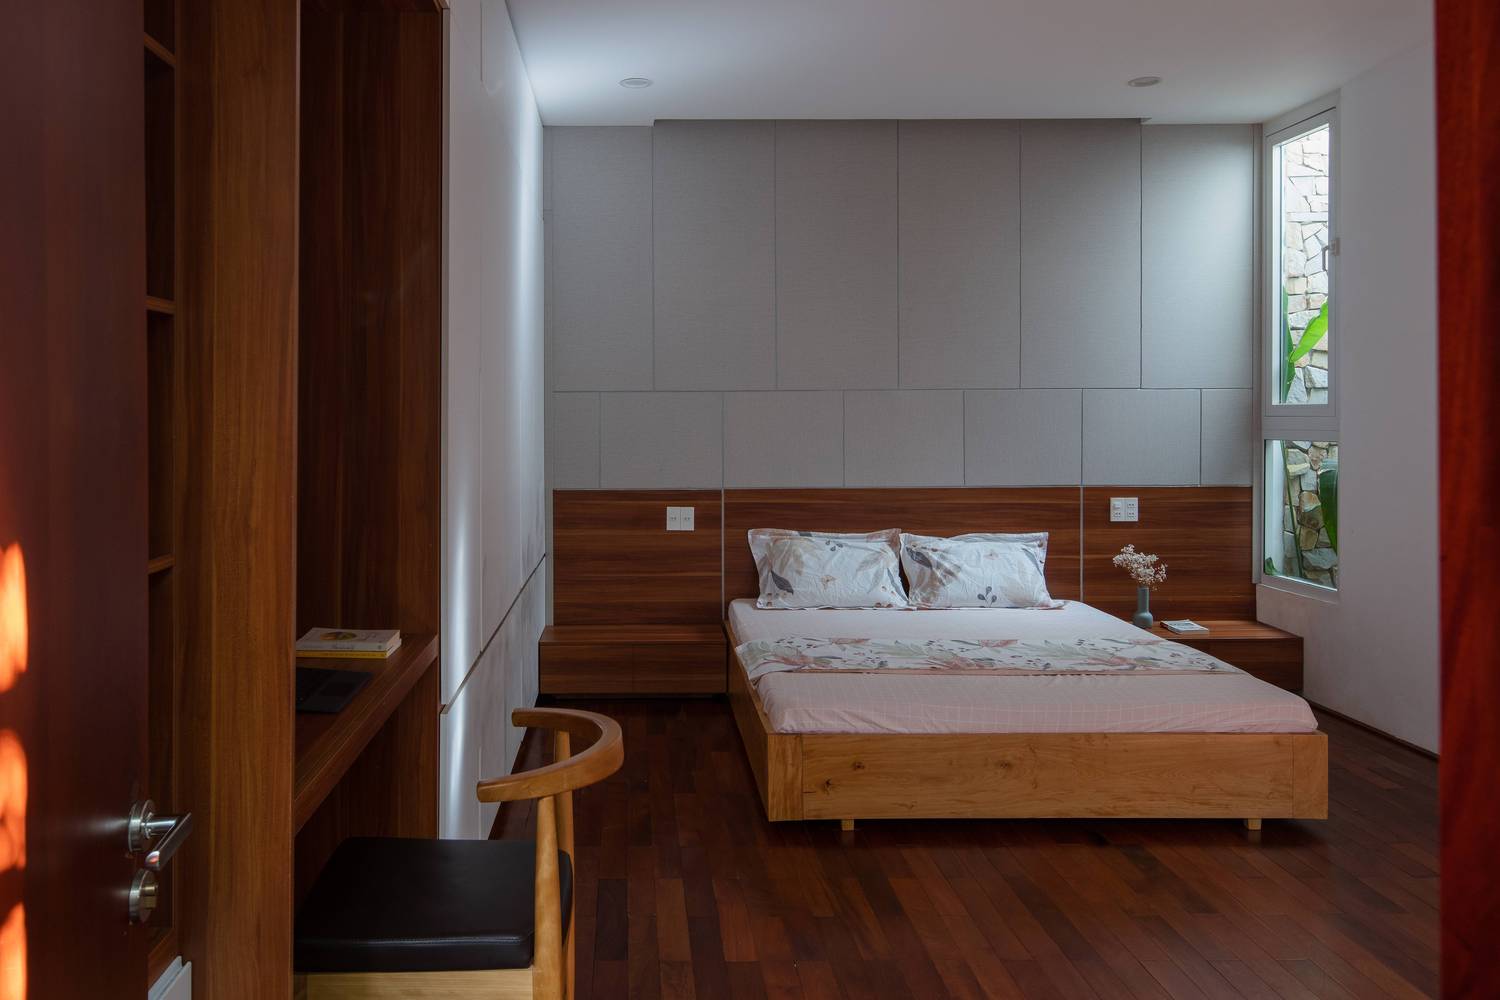 Phòng ngủ ấm áp, tạo cảm giác thư giãn với nội thất gỗ tự nhiên chủ đạo.